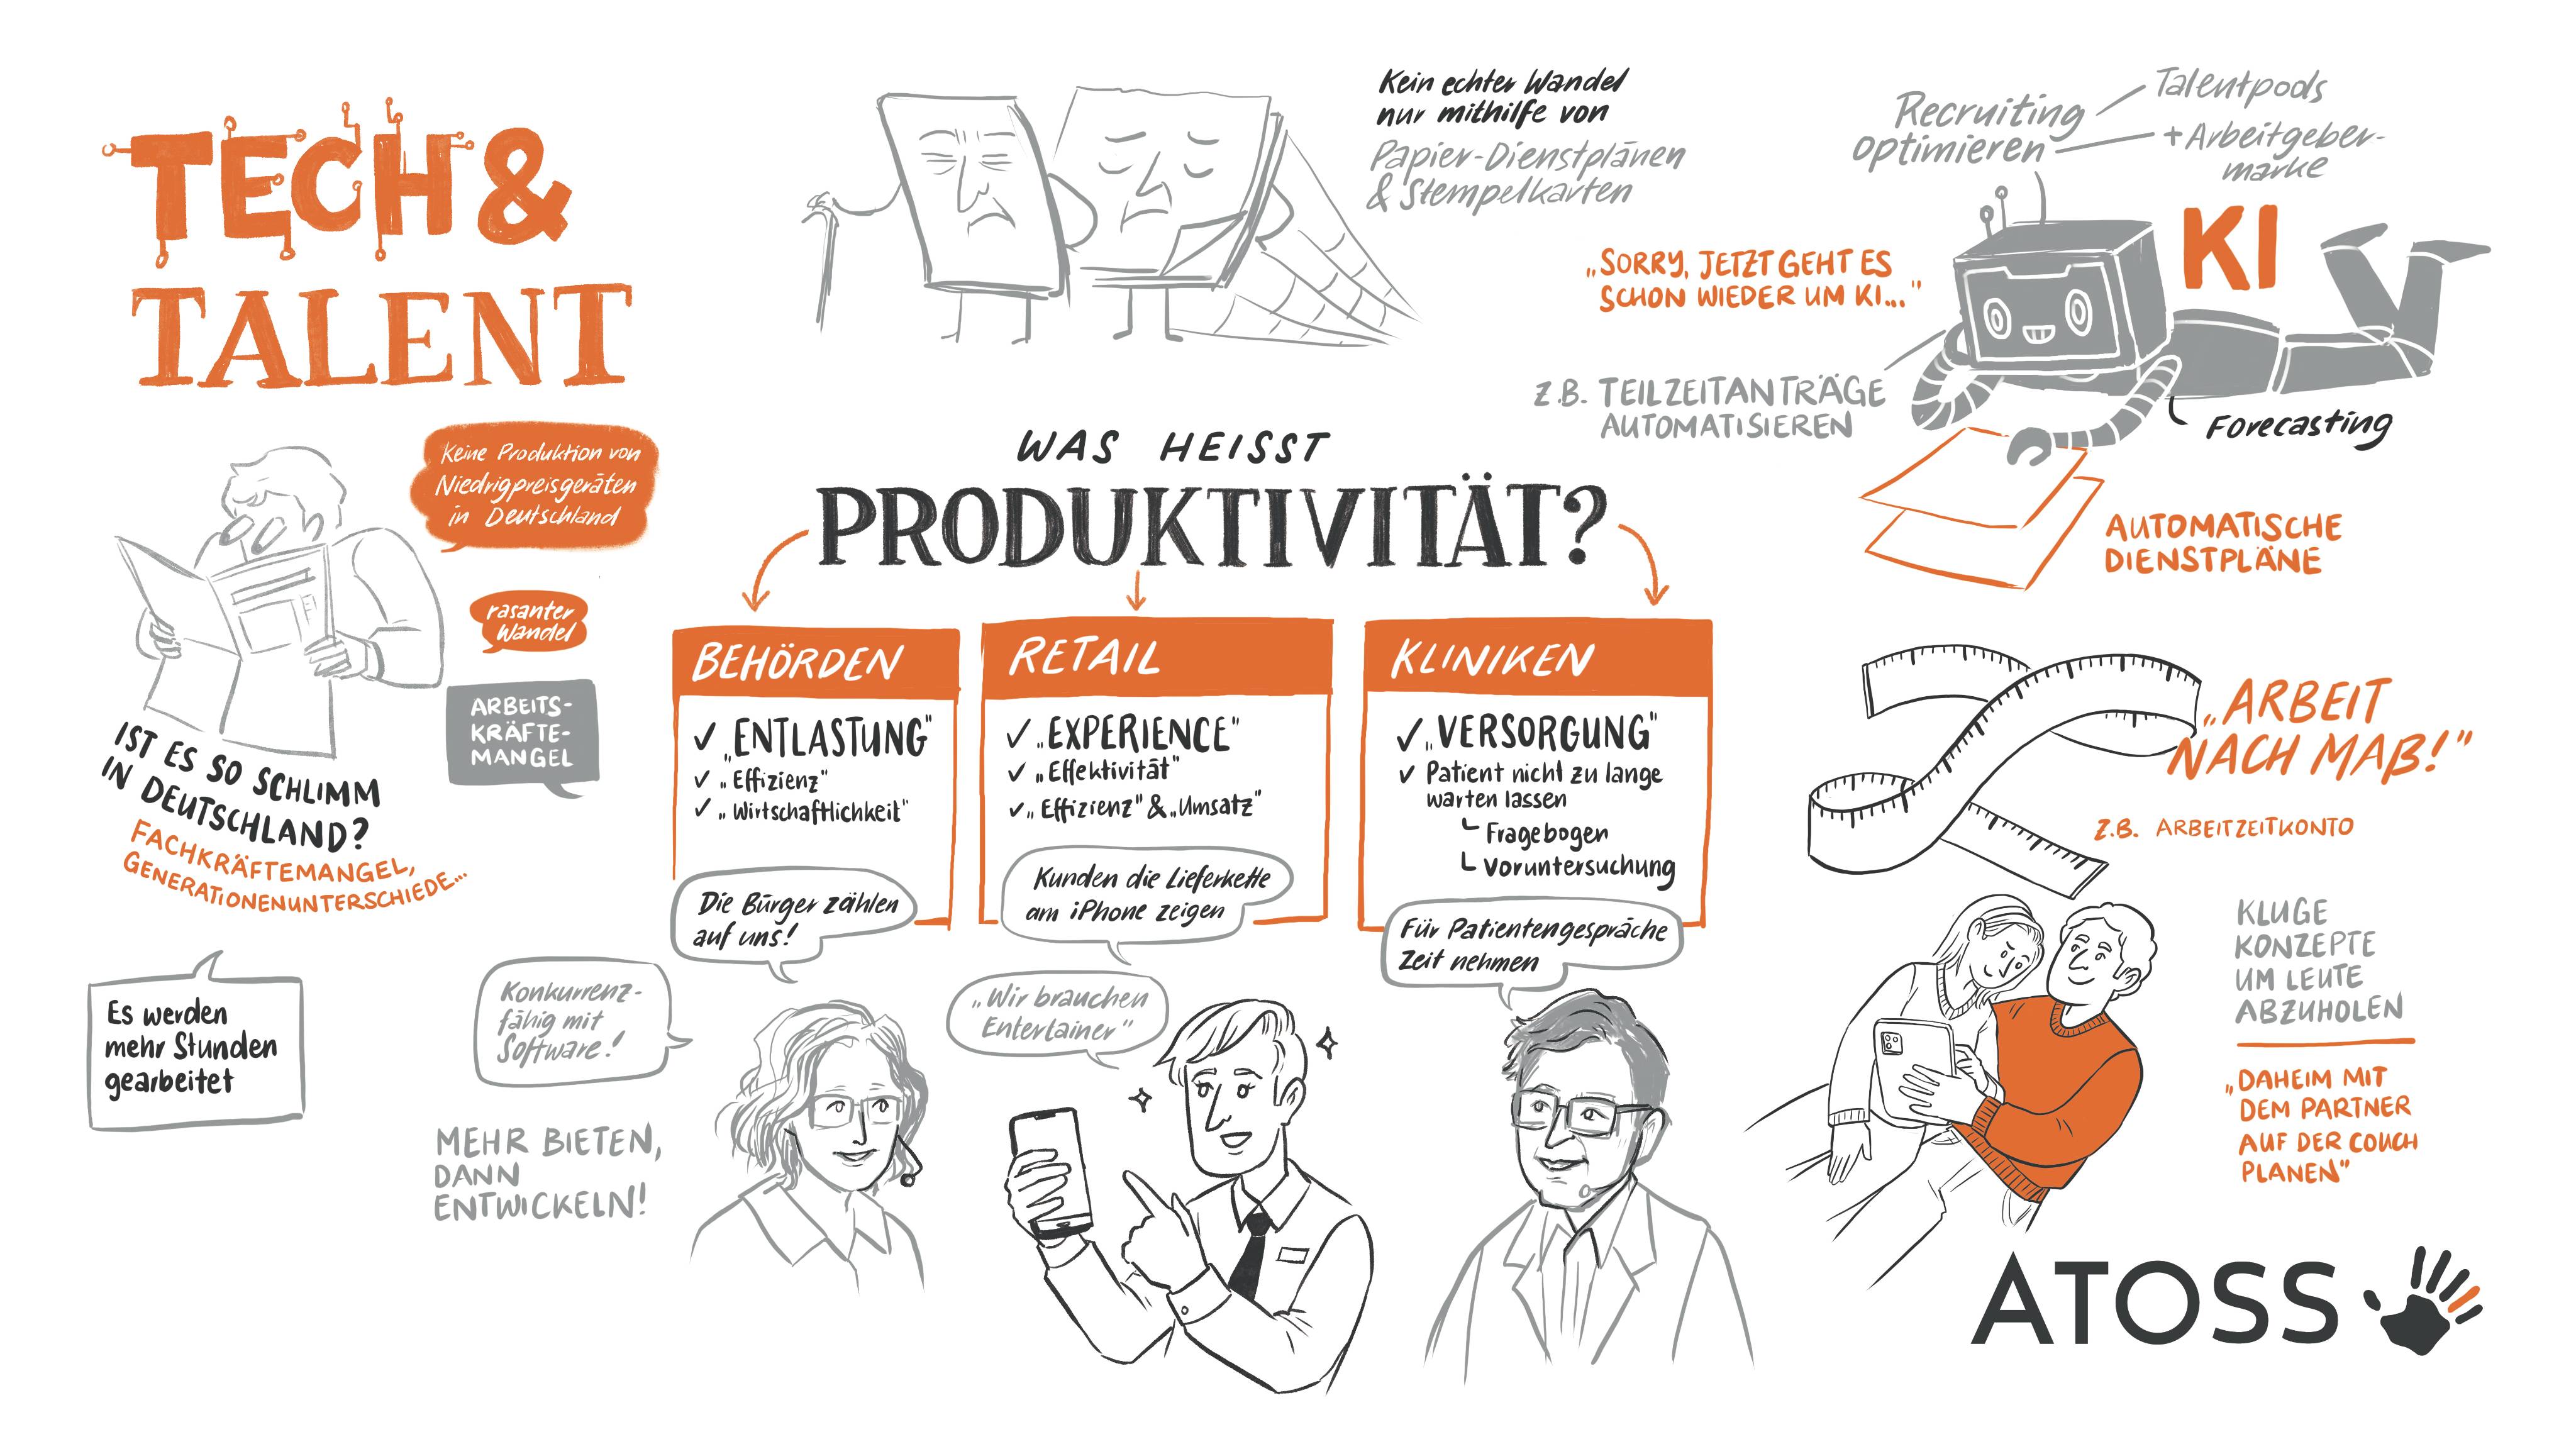 Illustration: WFMD24 - Tech & Talent: So geht Produktivität